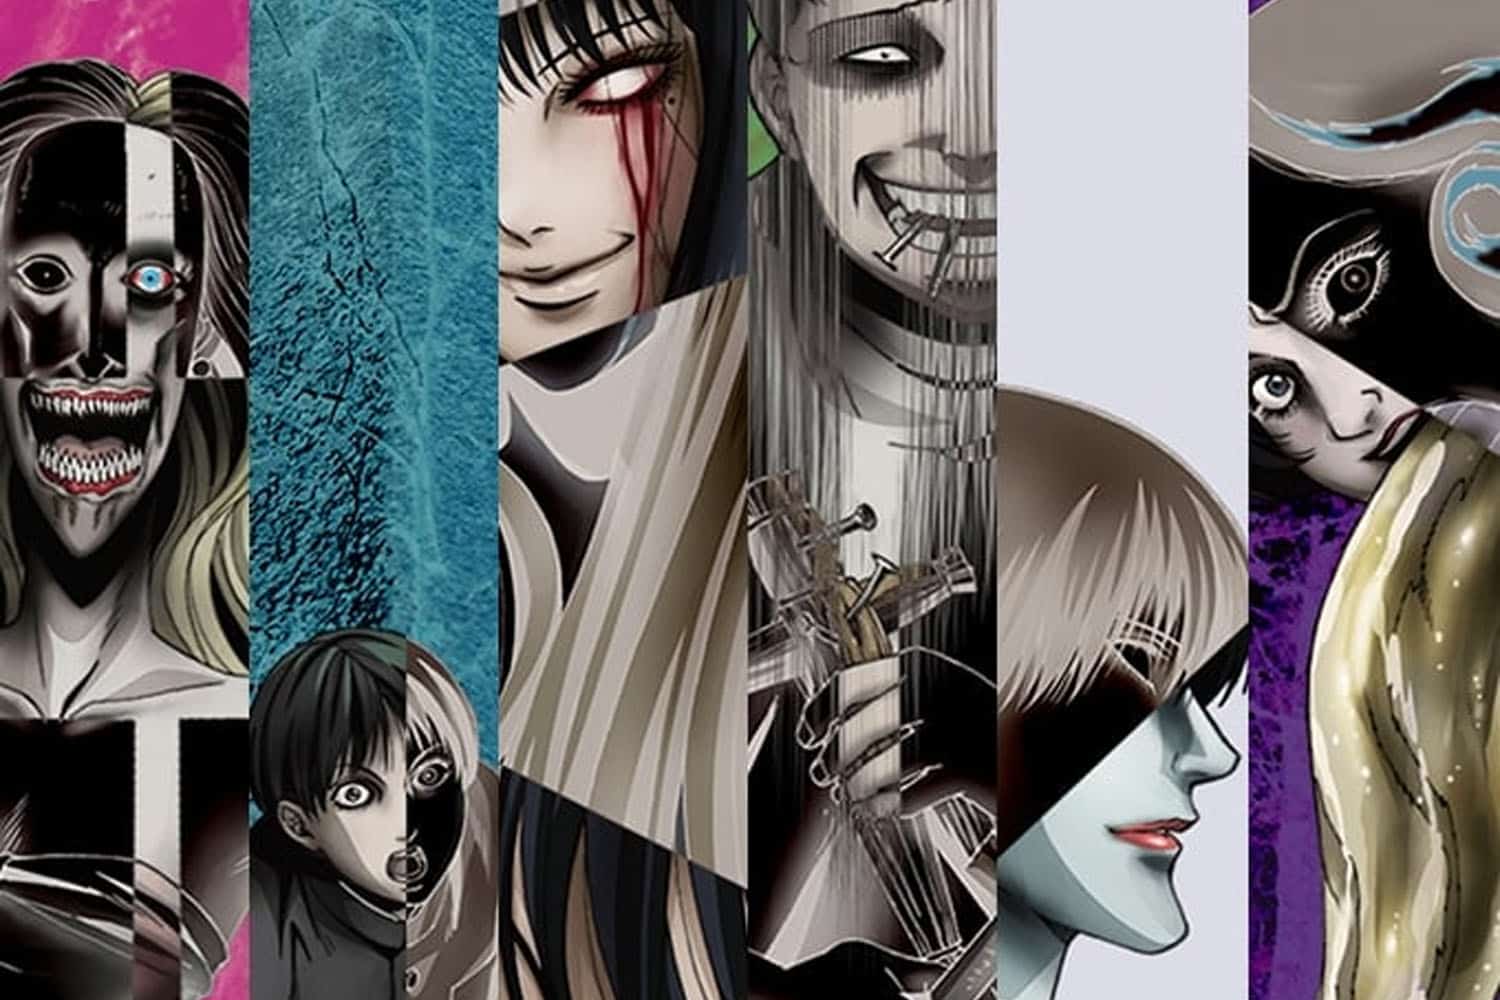 10 filmes e animes para conhecer Junji Ito, o mestre do horror - NerdBunker